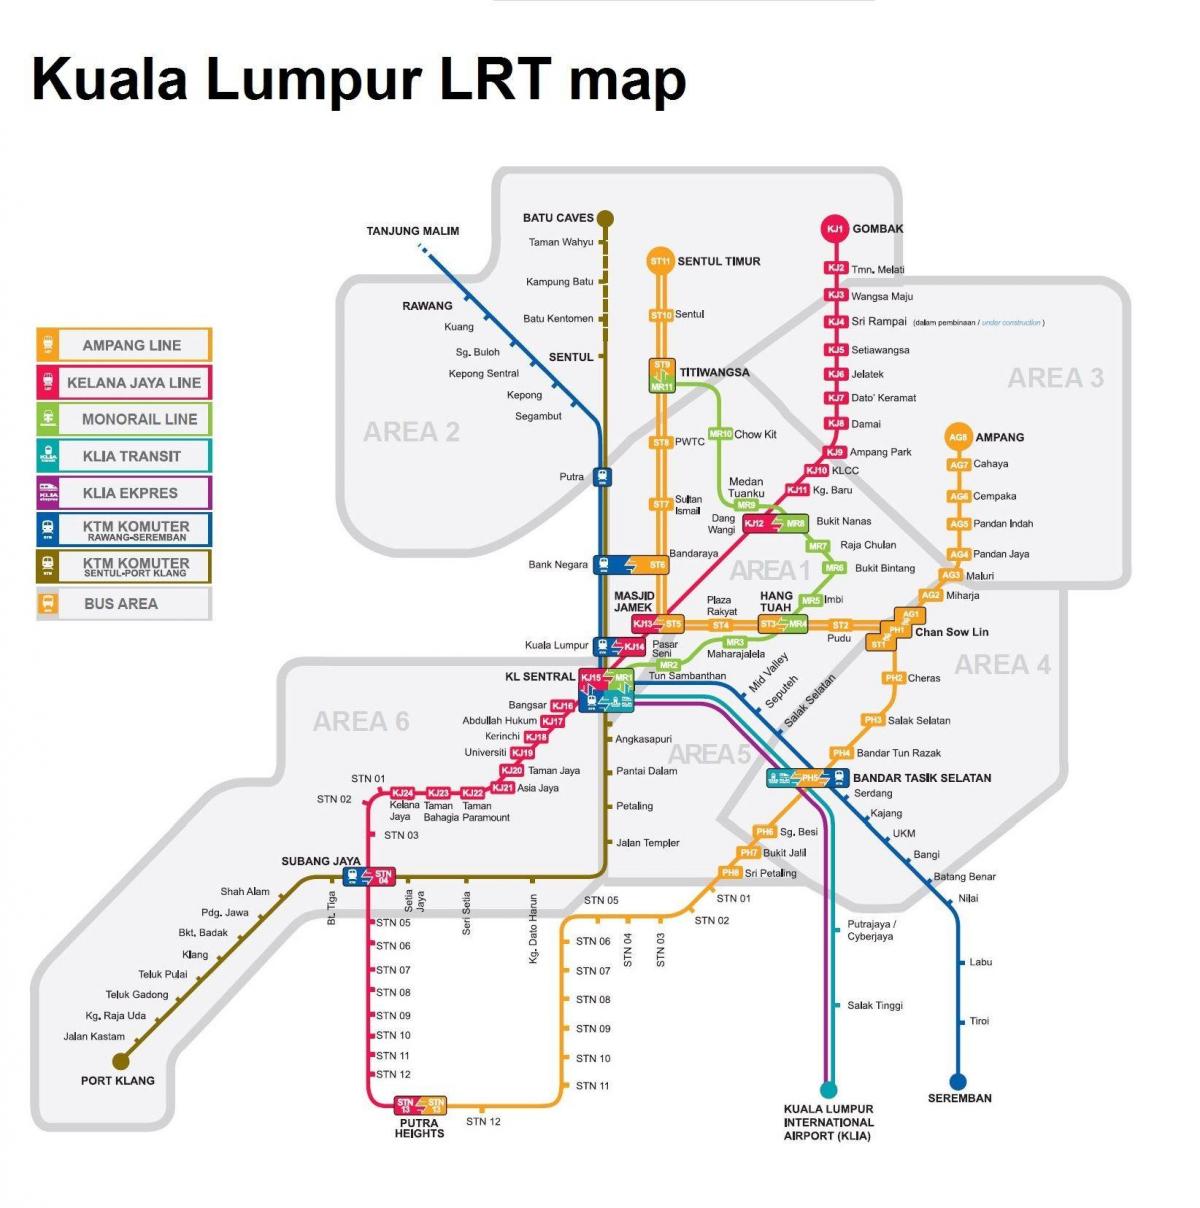 lrt mappa malesia 2016